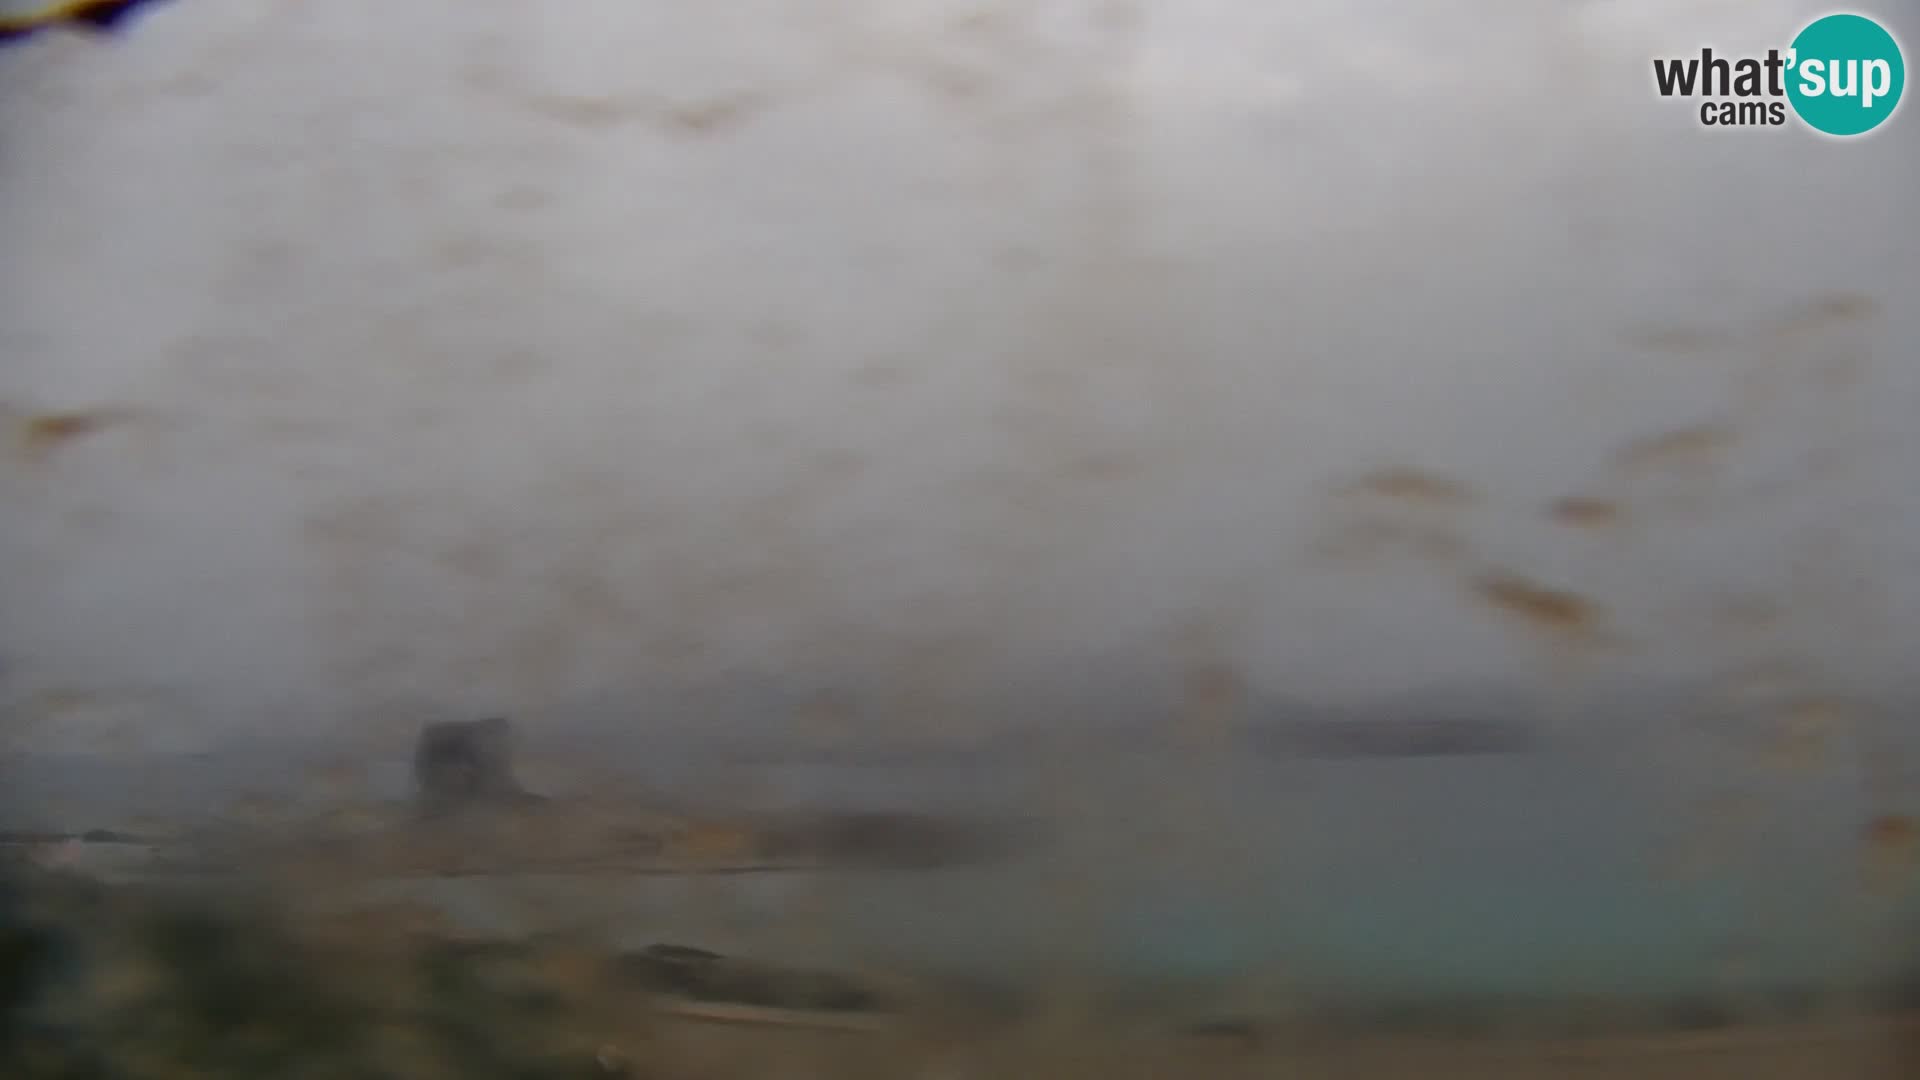 Capo Falcone web kamera Stintino – Plaža La Pelosa